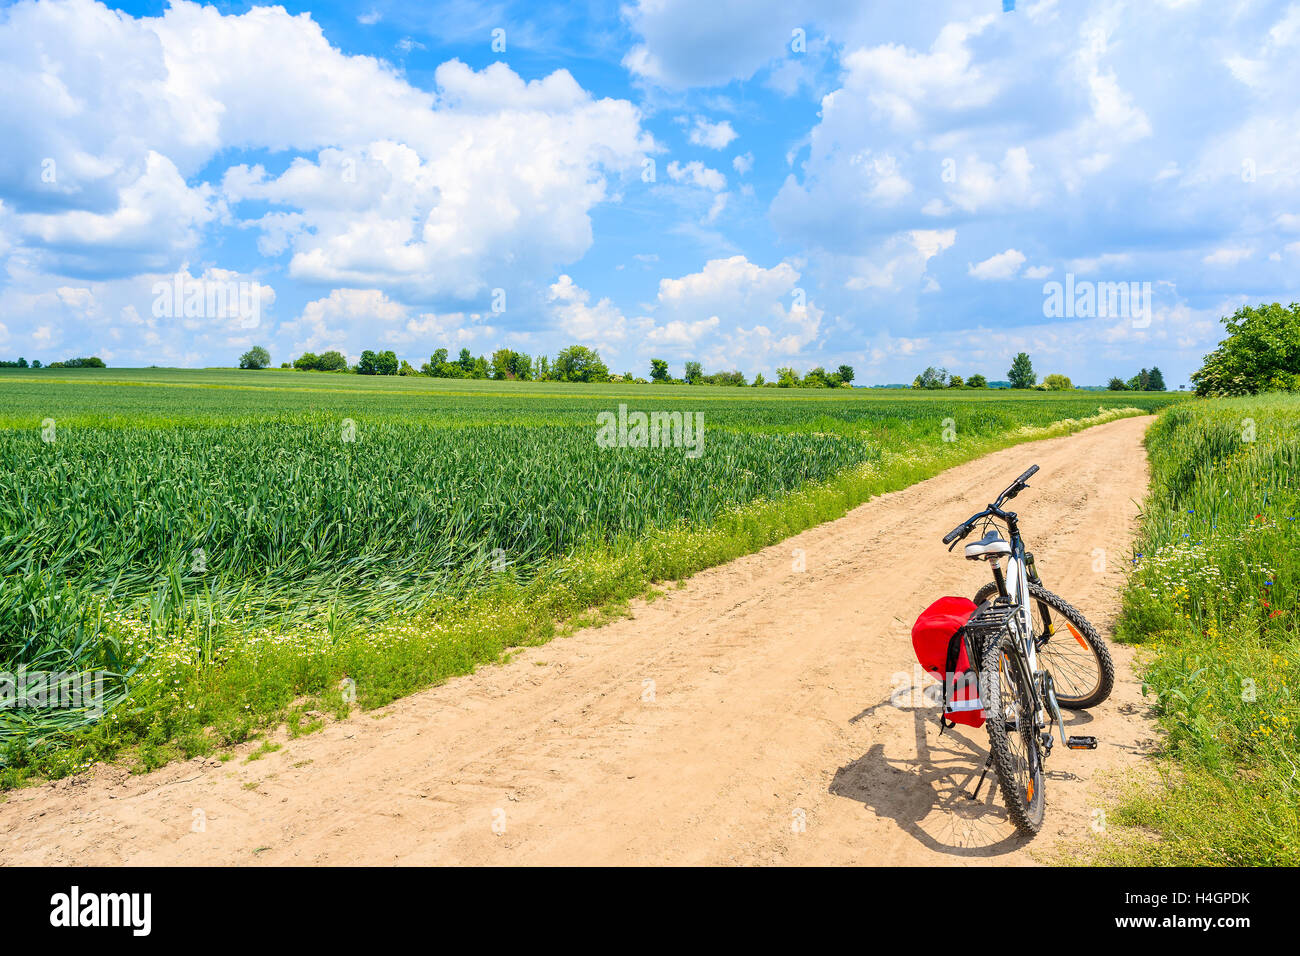 Location on rural road dans le magnifique paysage de campagne d'été, Pologne Banque D'Images